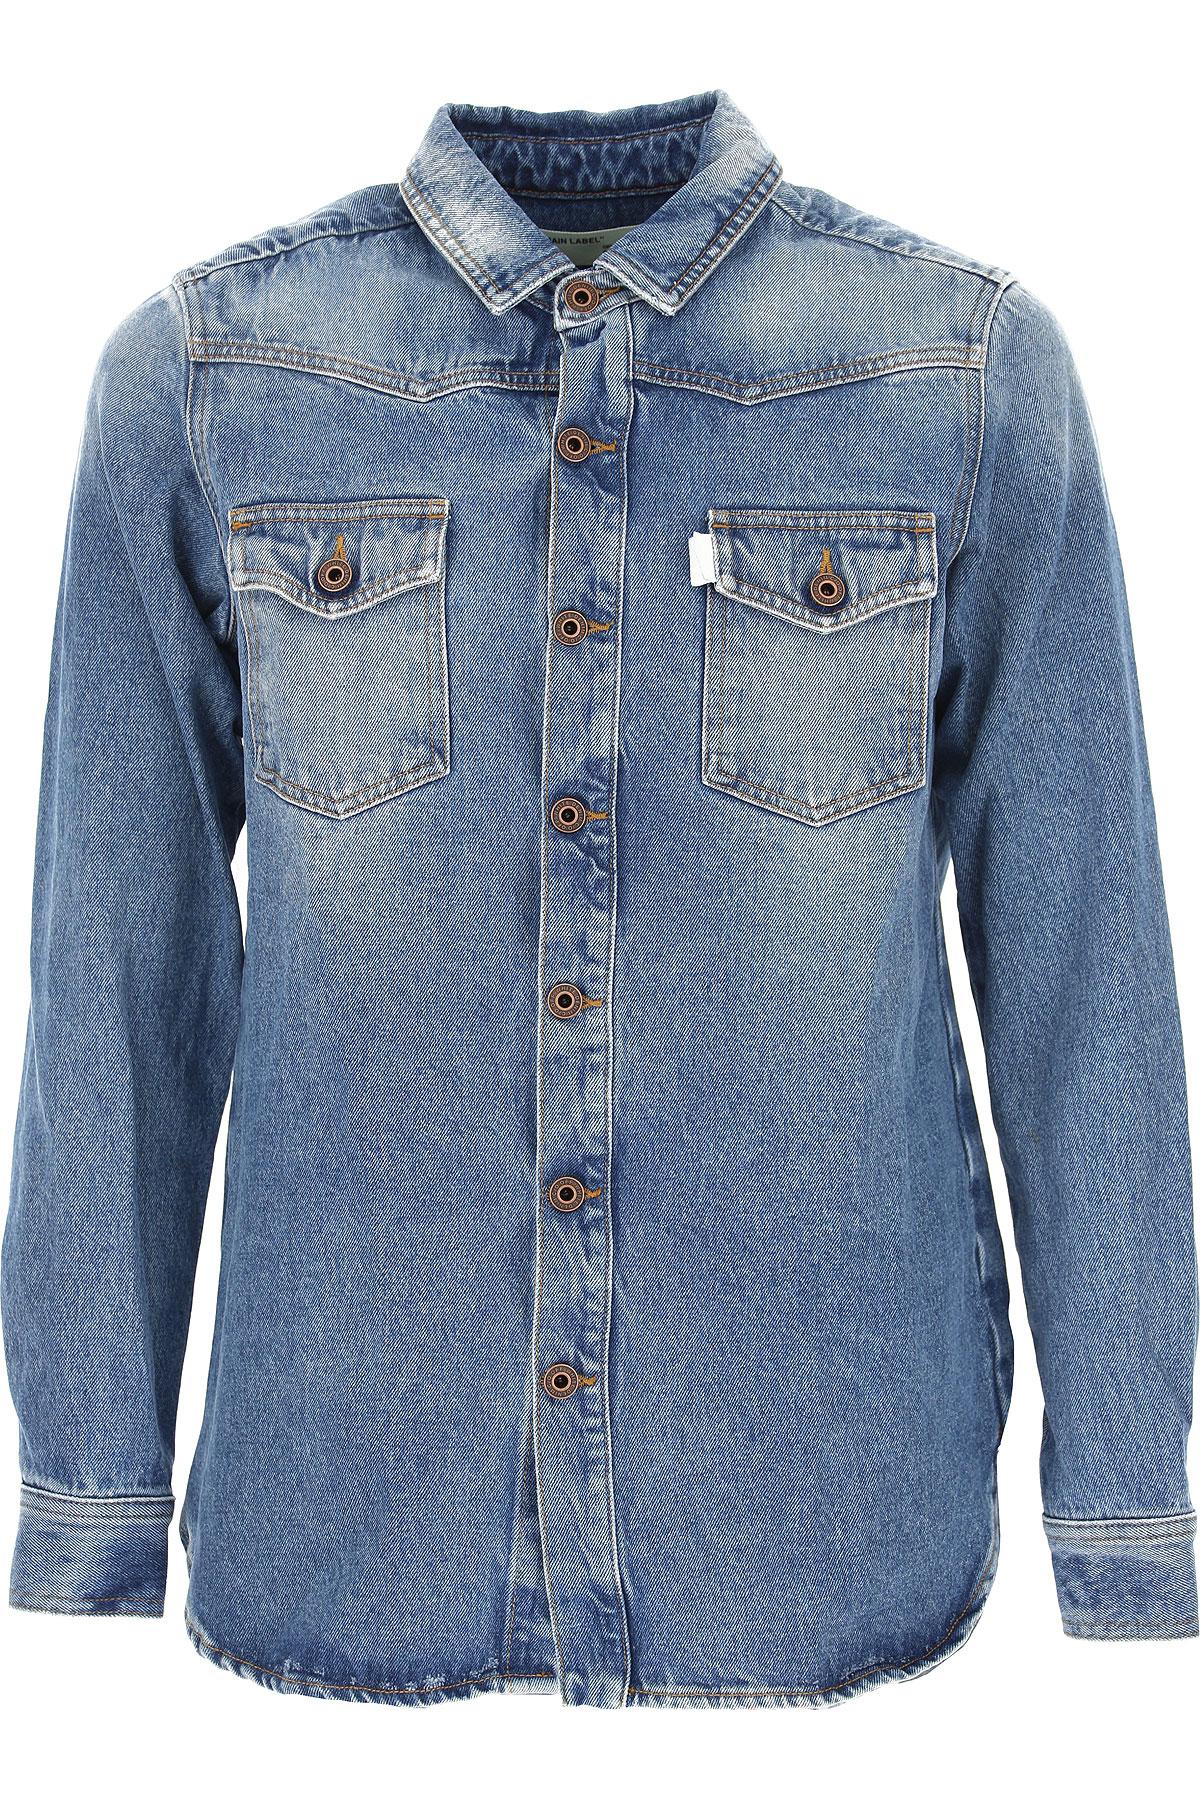 Off-White c/o Virgil Abloh Jacket For Men On Sale in Blue for Men - Save 22% - Lyst